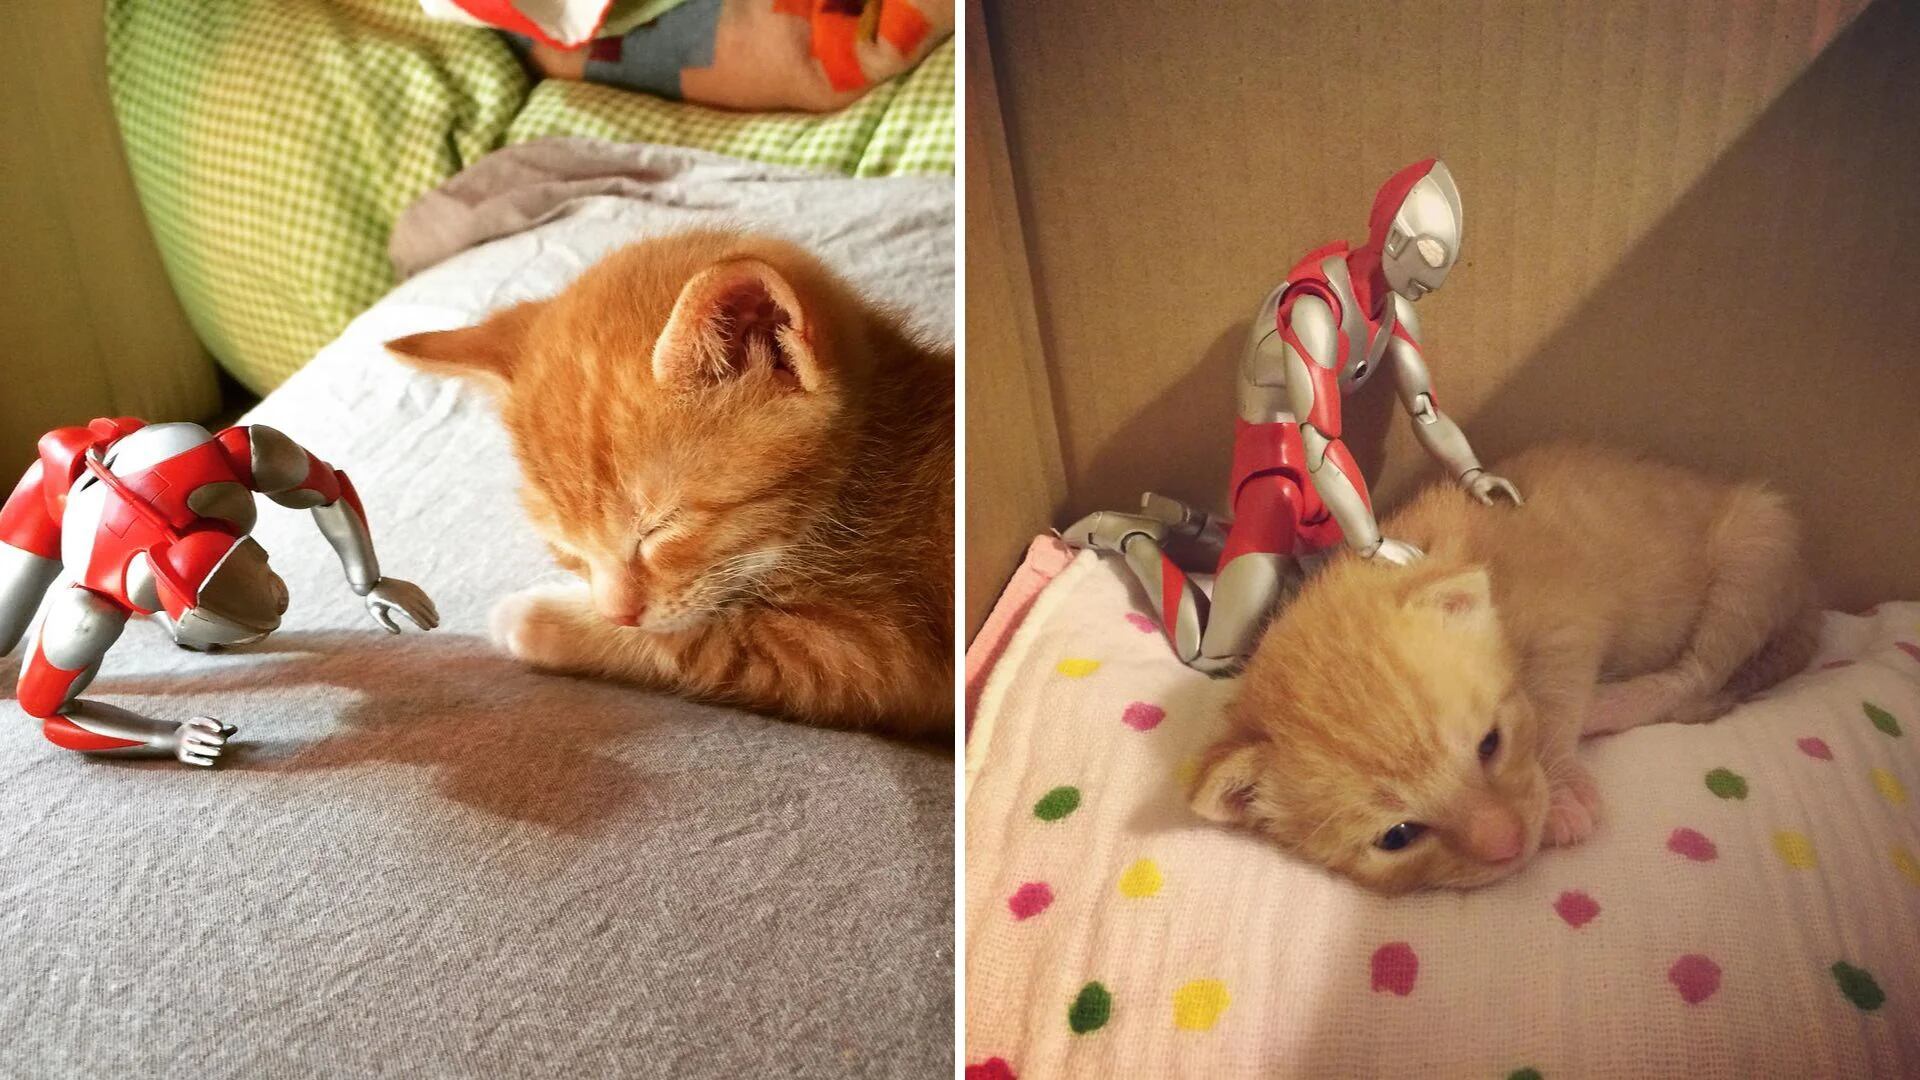 El juguete que cambió todo: cómo un muñeco se convirtió en el “enfermero” de un gato rescatado